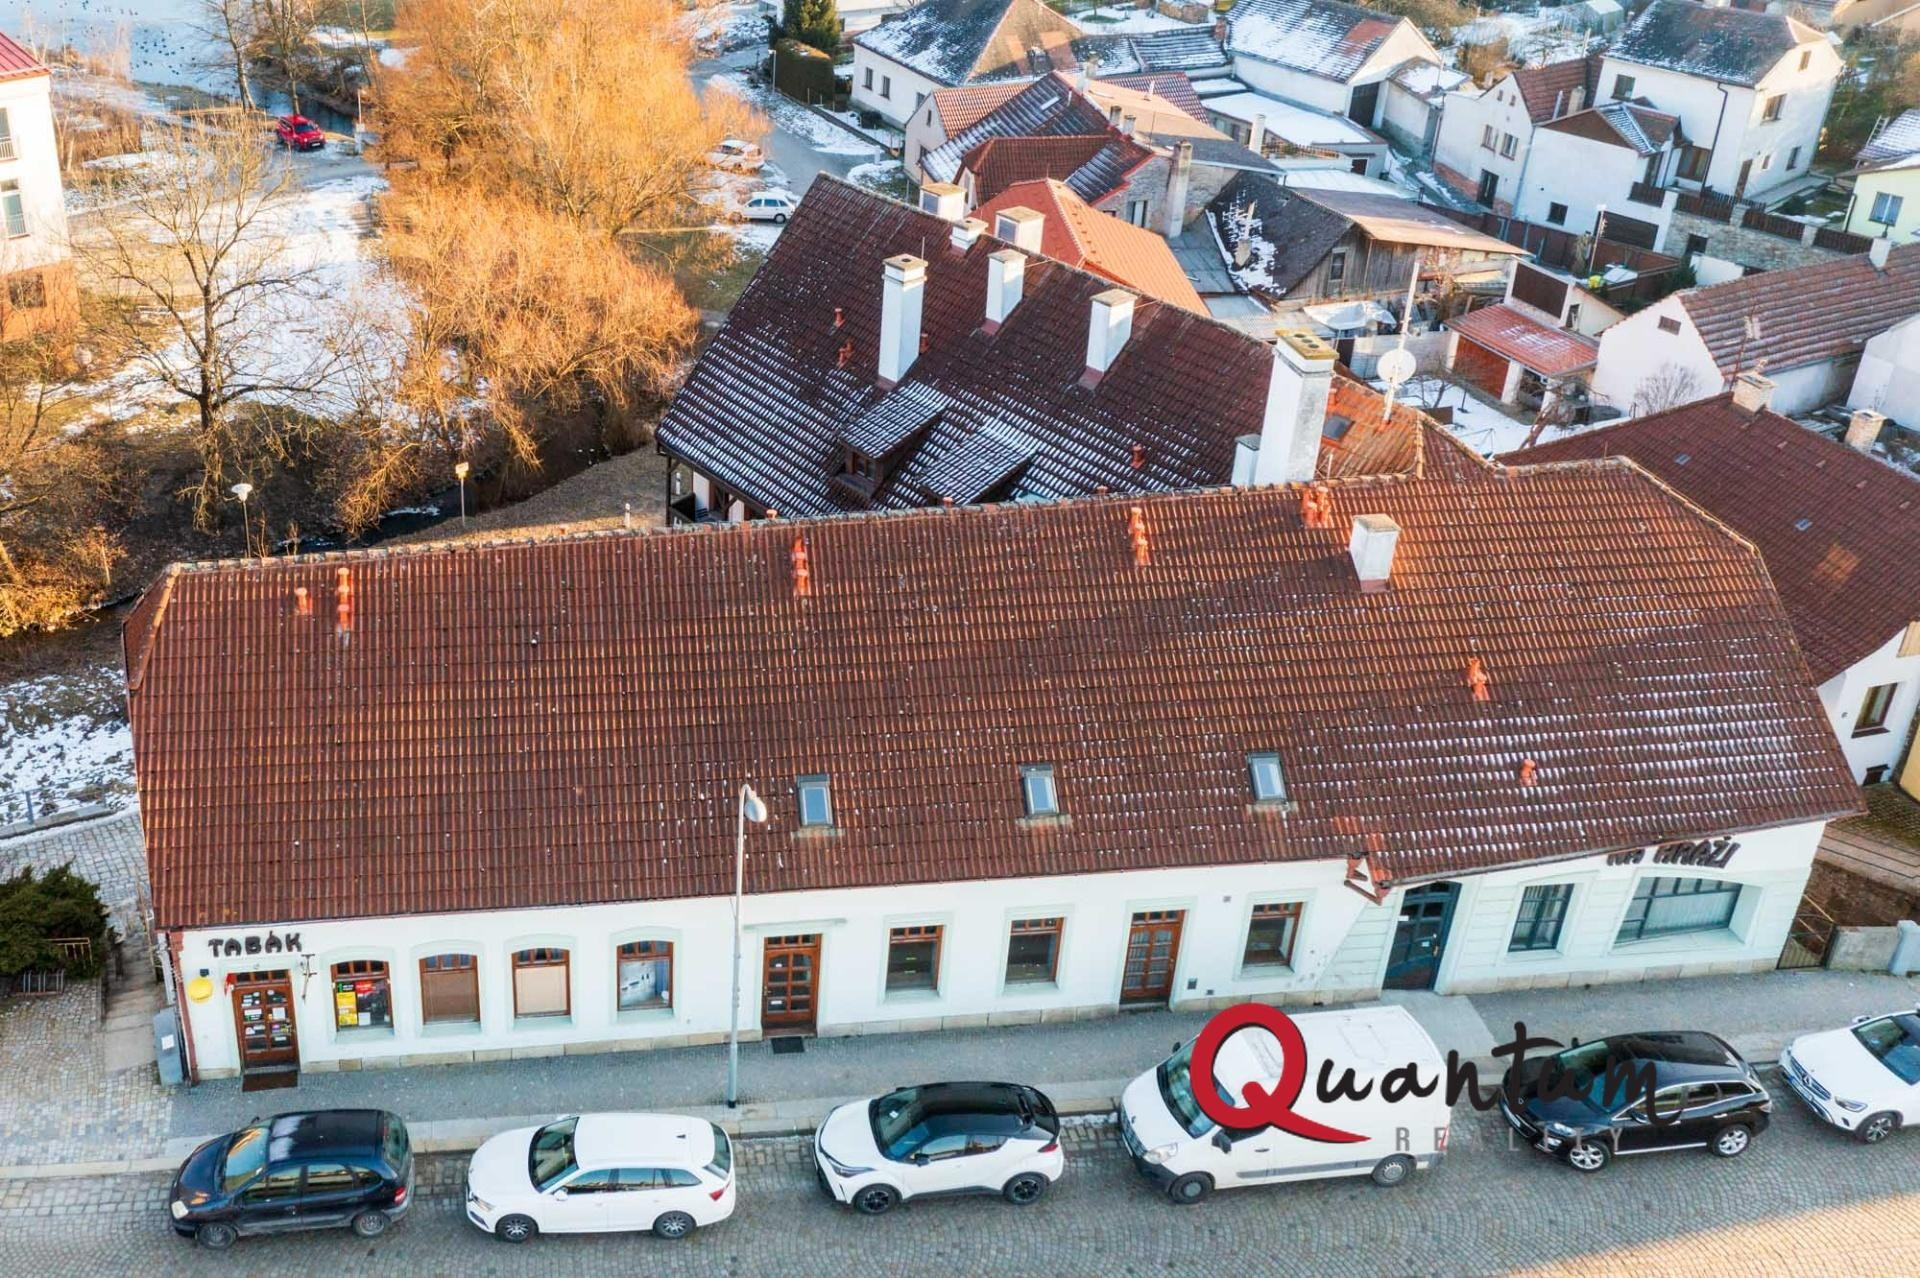 Prodej, hotel, restaurace, nebytové prostory 819 m2 - Telč-Staré Město